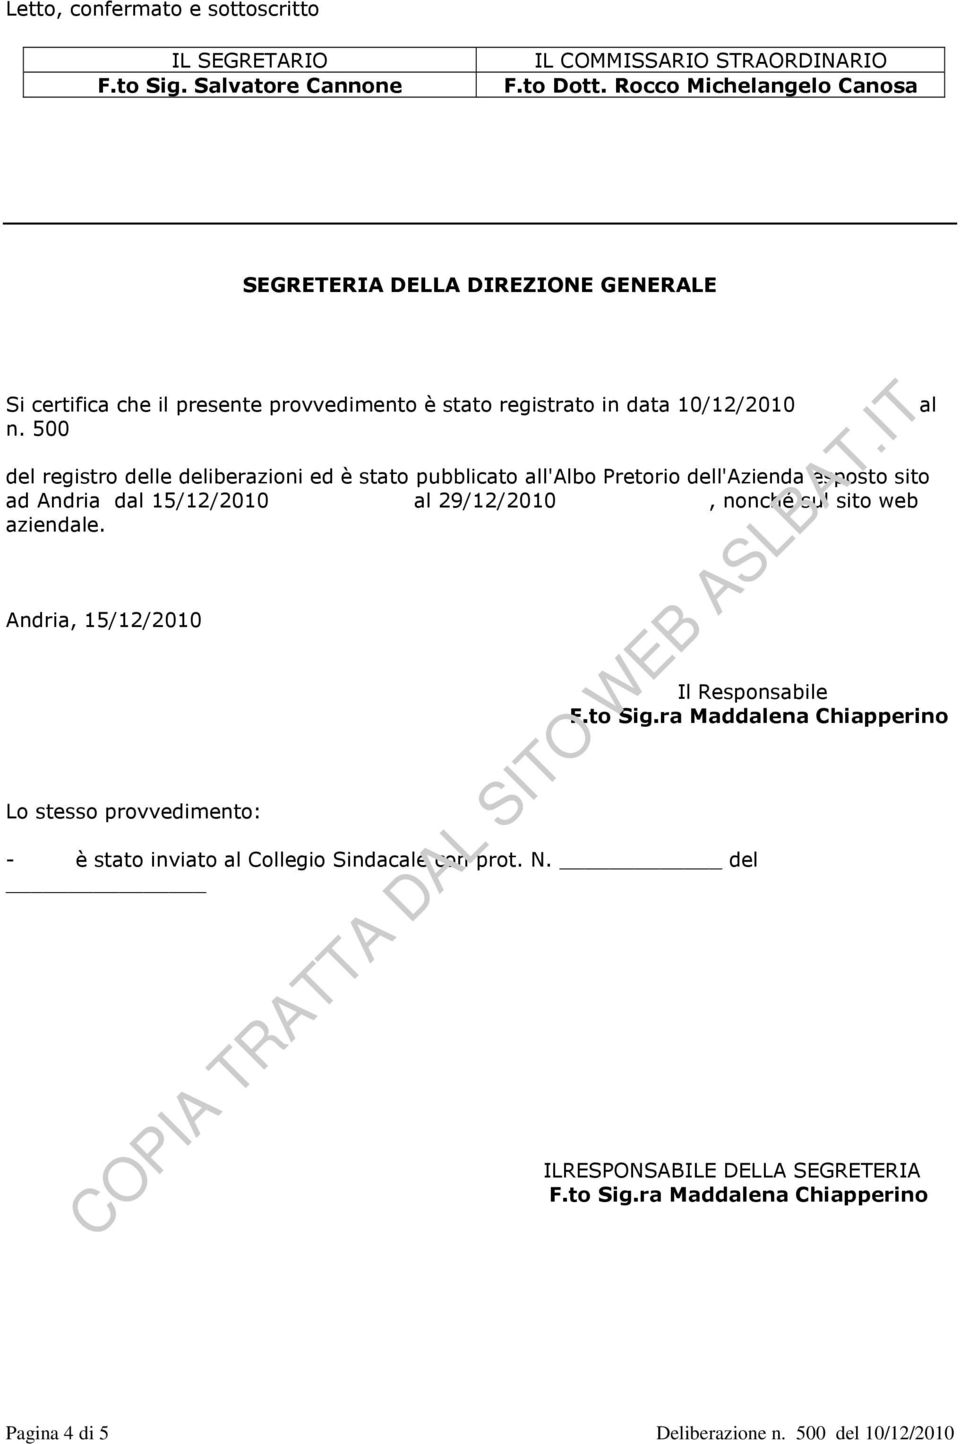 500 del registro delle deliberazioni ed è stato pubblicato all'albo Pretorio dell'azienda esposto sito ad Andria dal 15/12/2010 al 29/12/2010, nonché sul sito web aziendale.